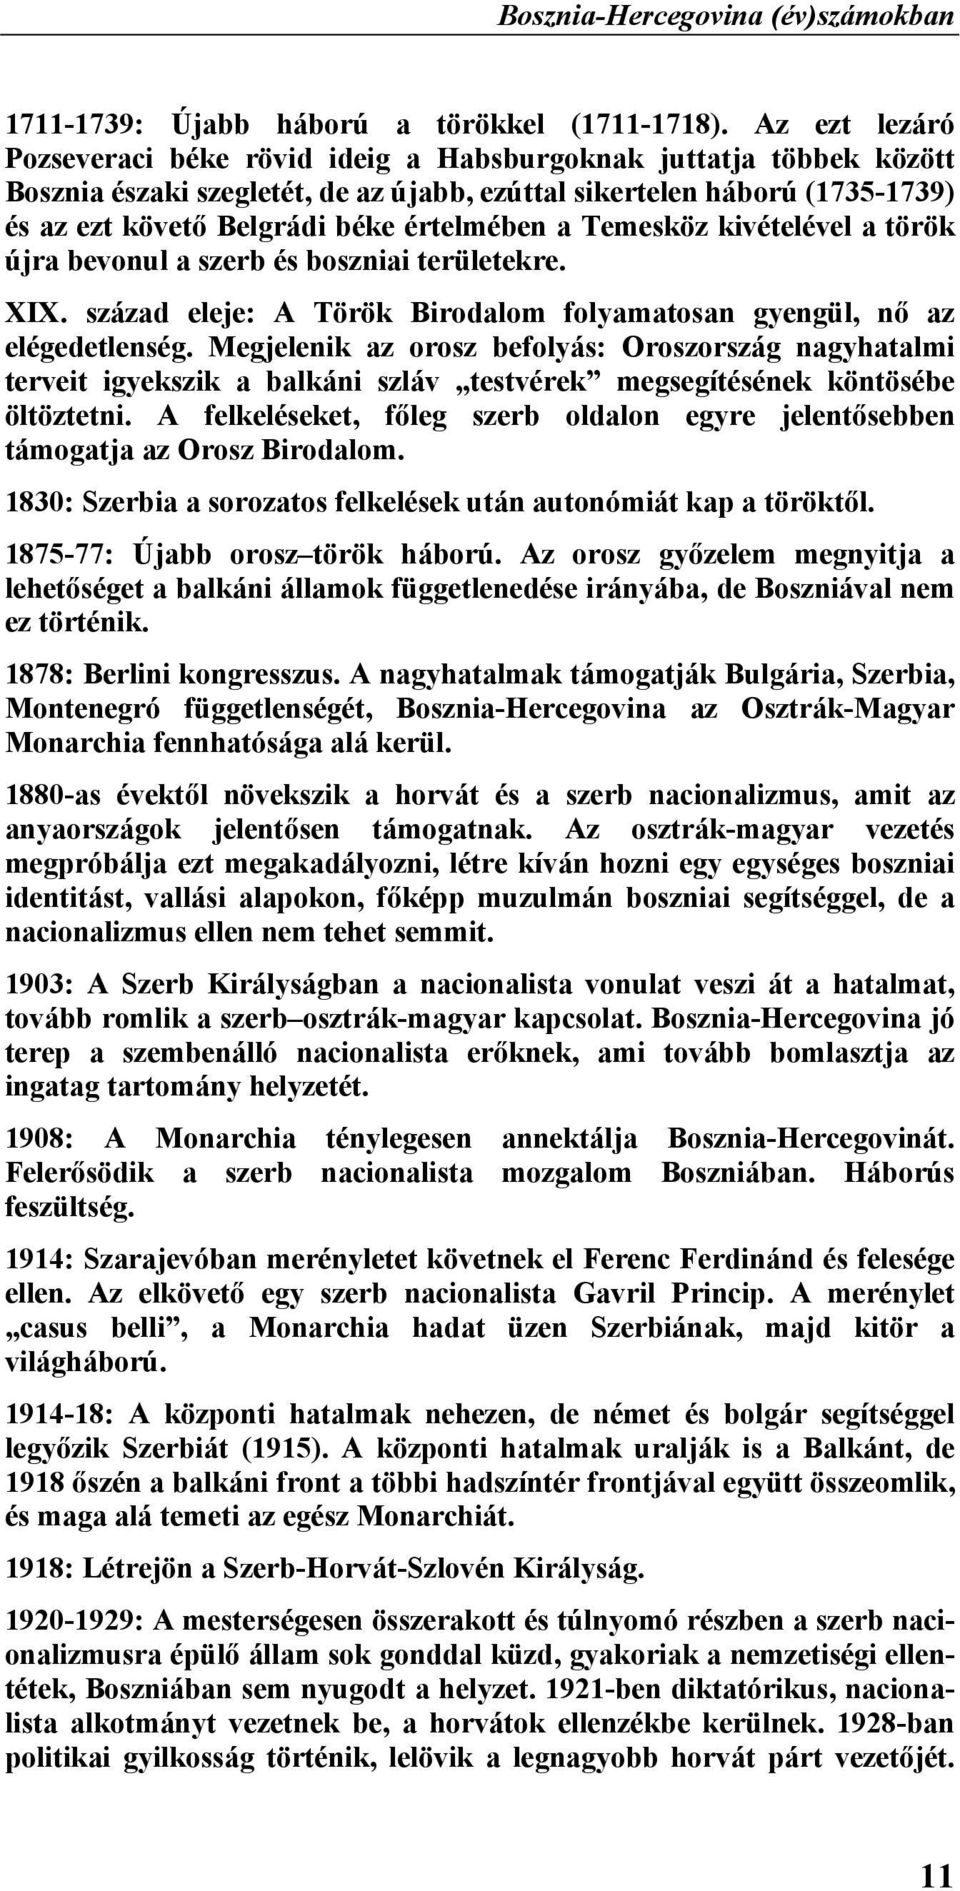 értelmében a Temesköz kivételével a török újra bevonul a szerb és boszniai területekre. XIX. század eleje: A Török Birodalom folyamatosan gyengül, nő az elégedetlenség.